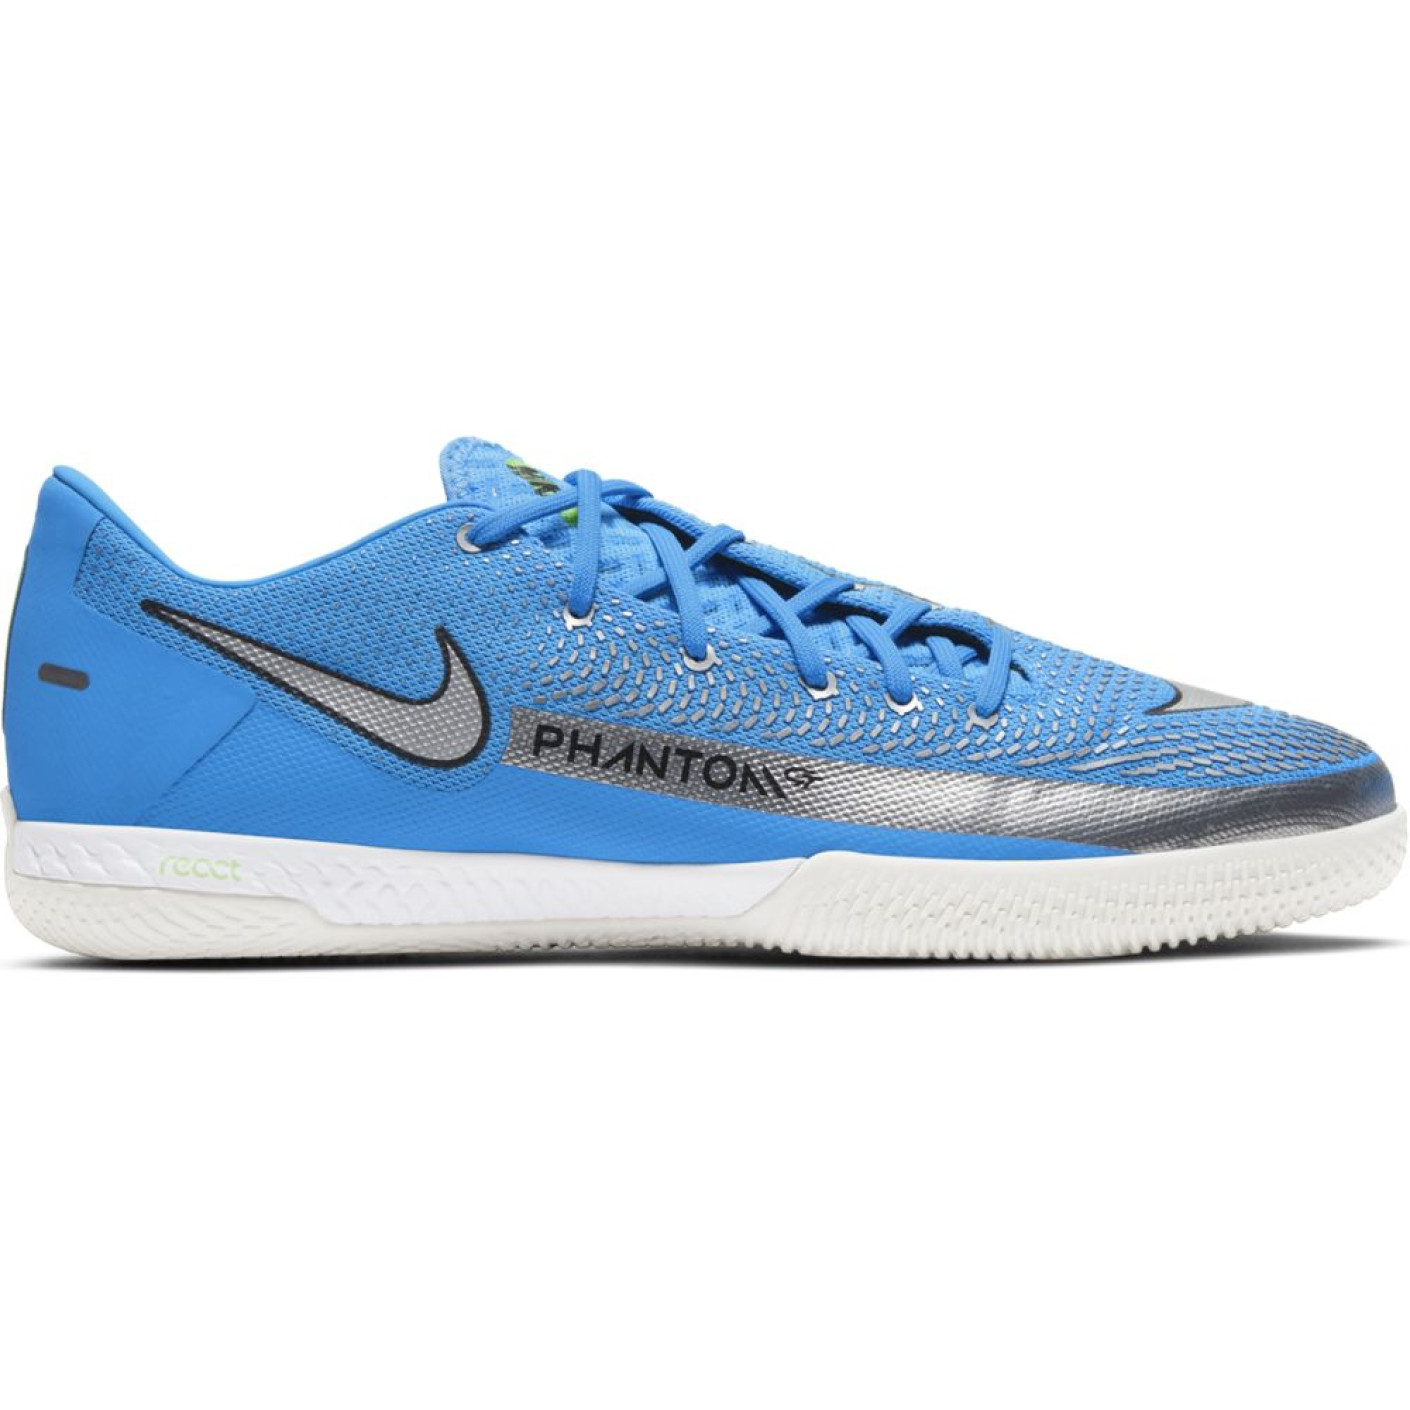 Chaussures de football en salle Nike Phantom GT React Pro (IC) Bleu Argent Vert